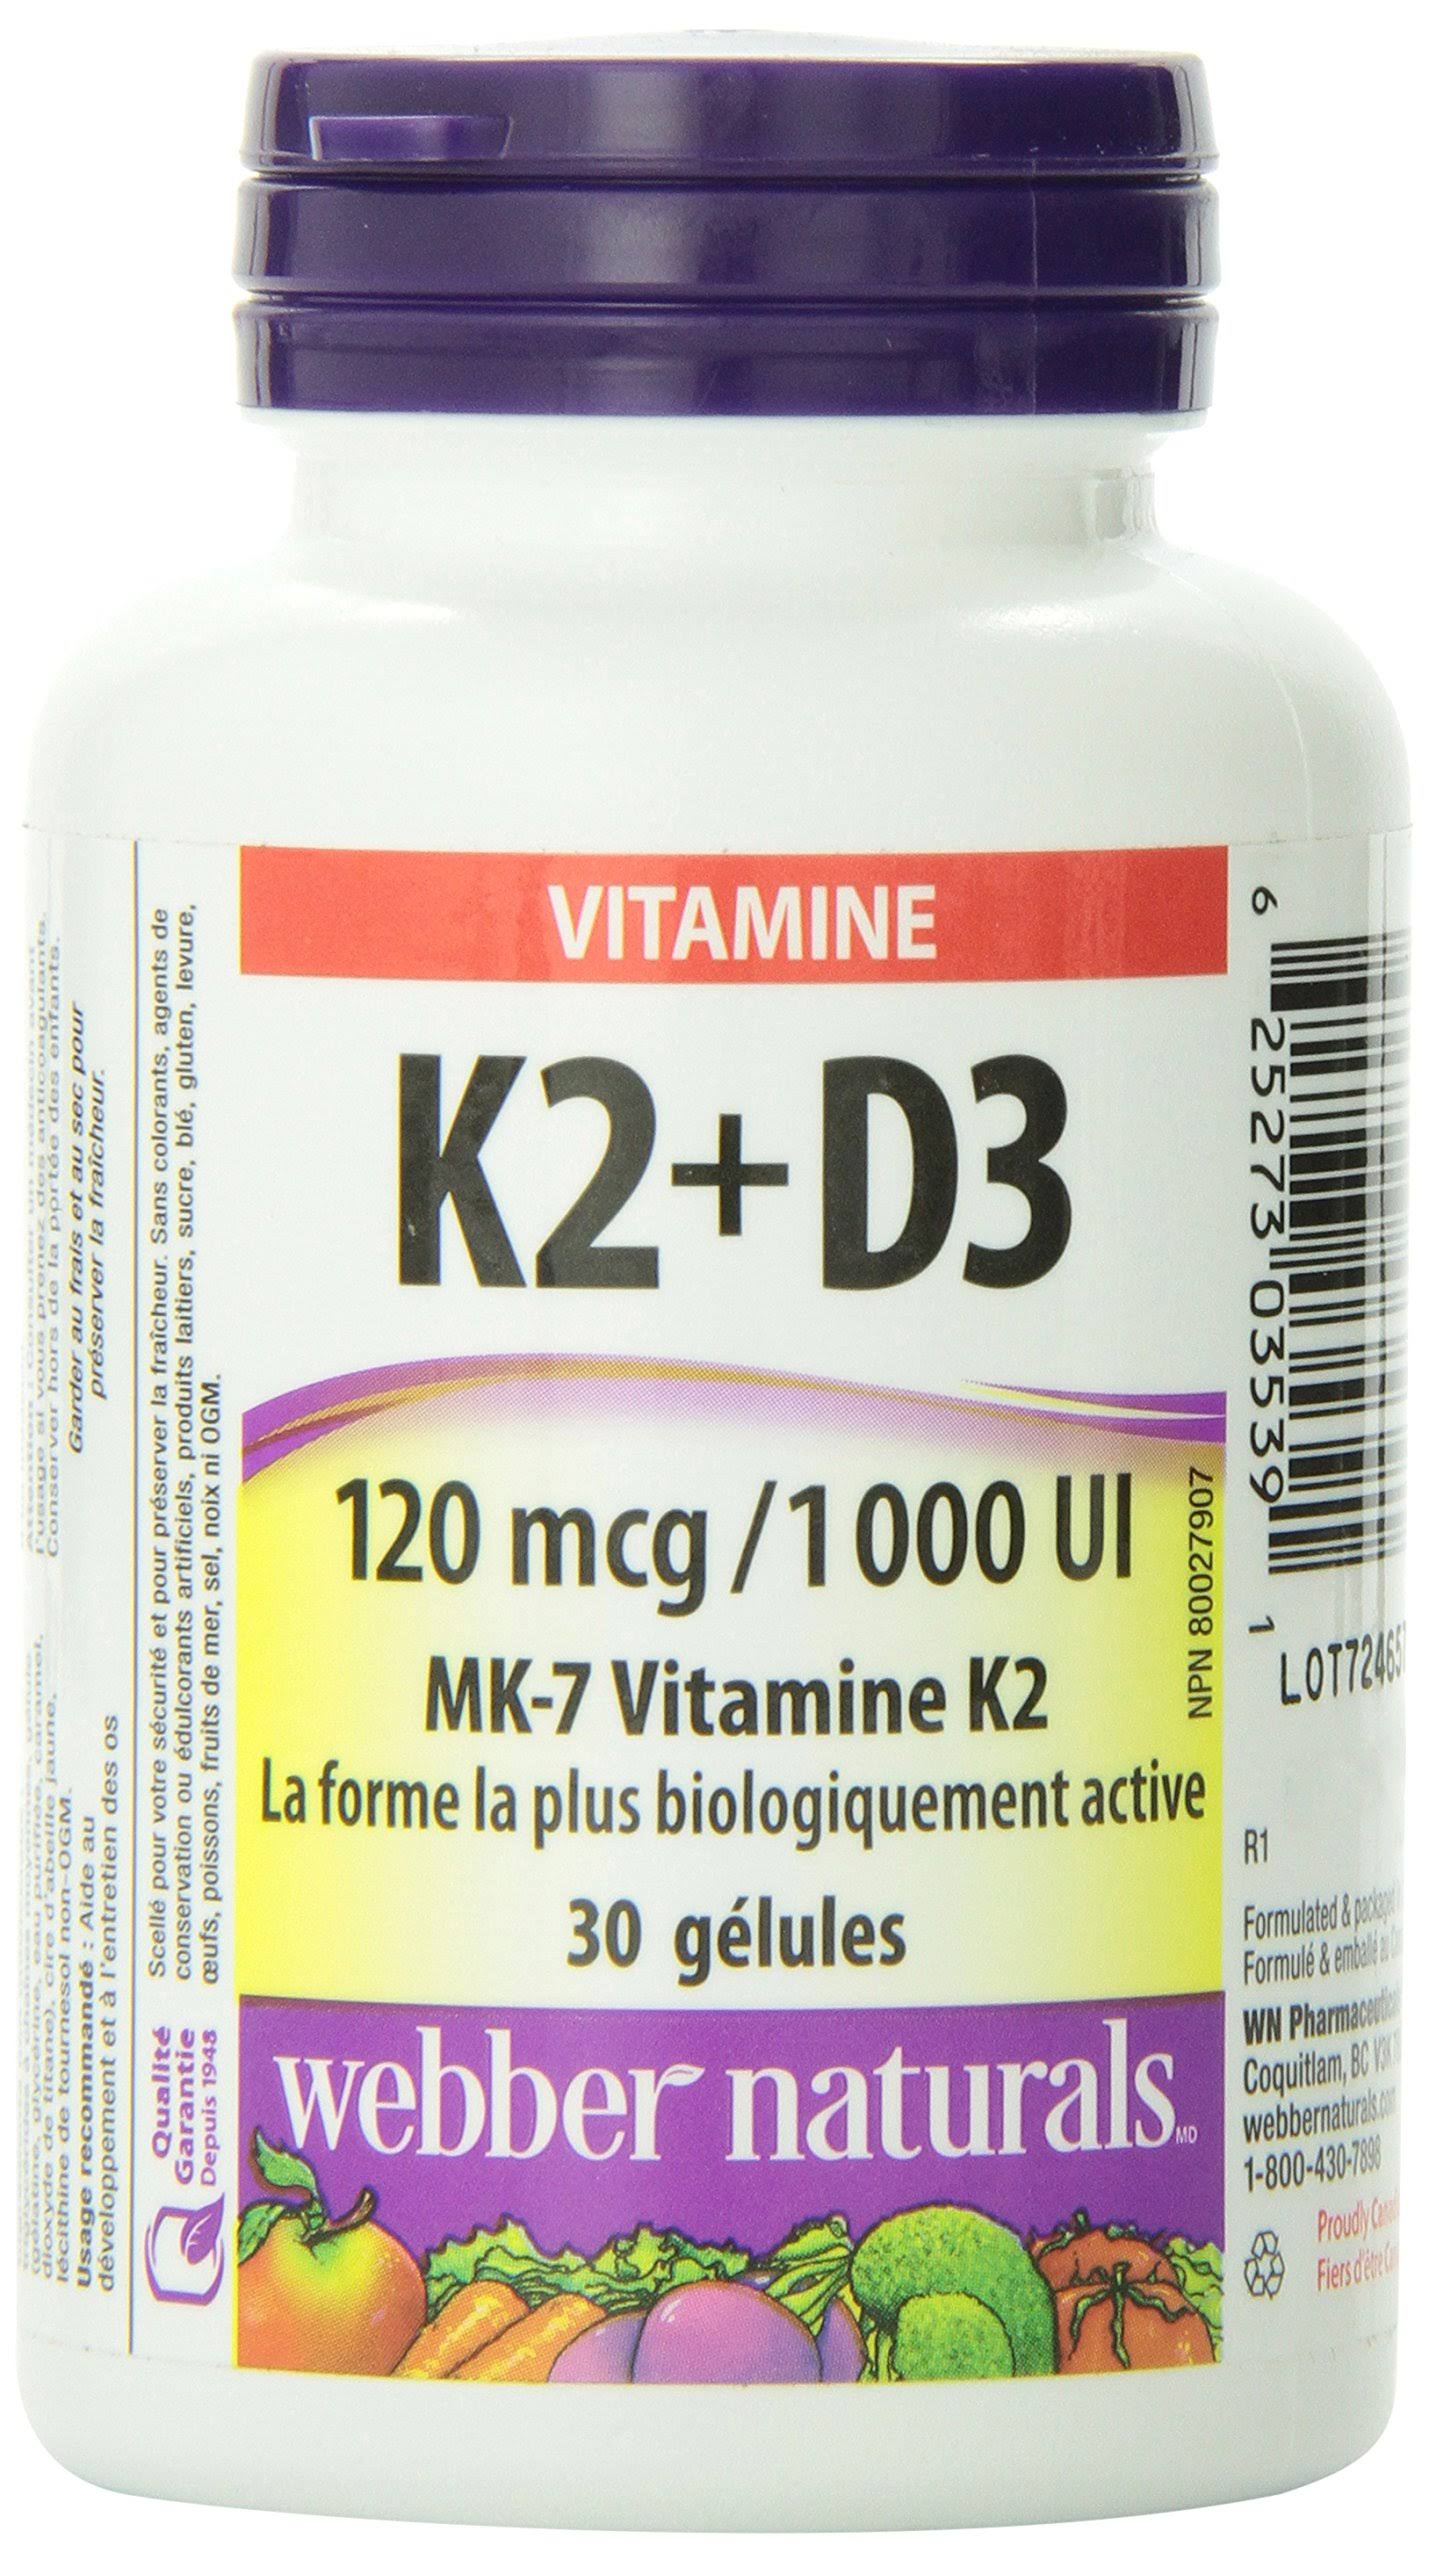 Webber Naturals Vitamin K2 + D3 Softgels